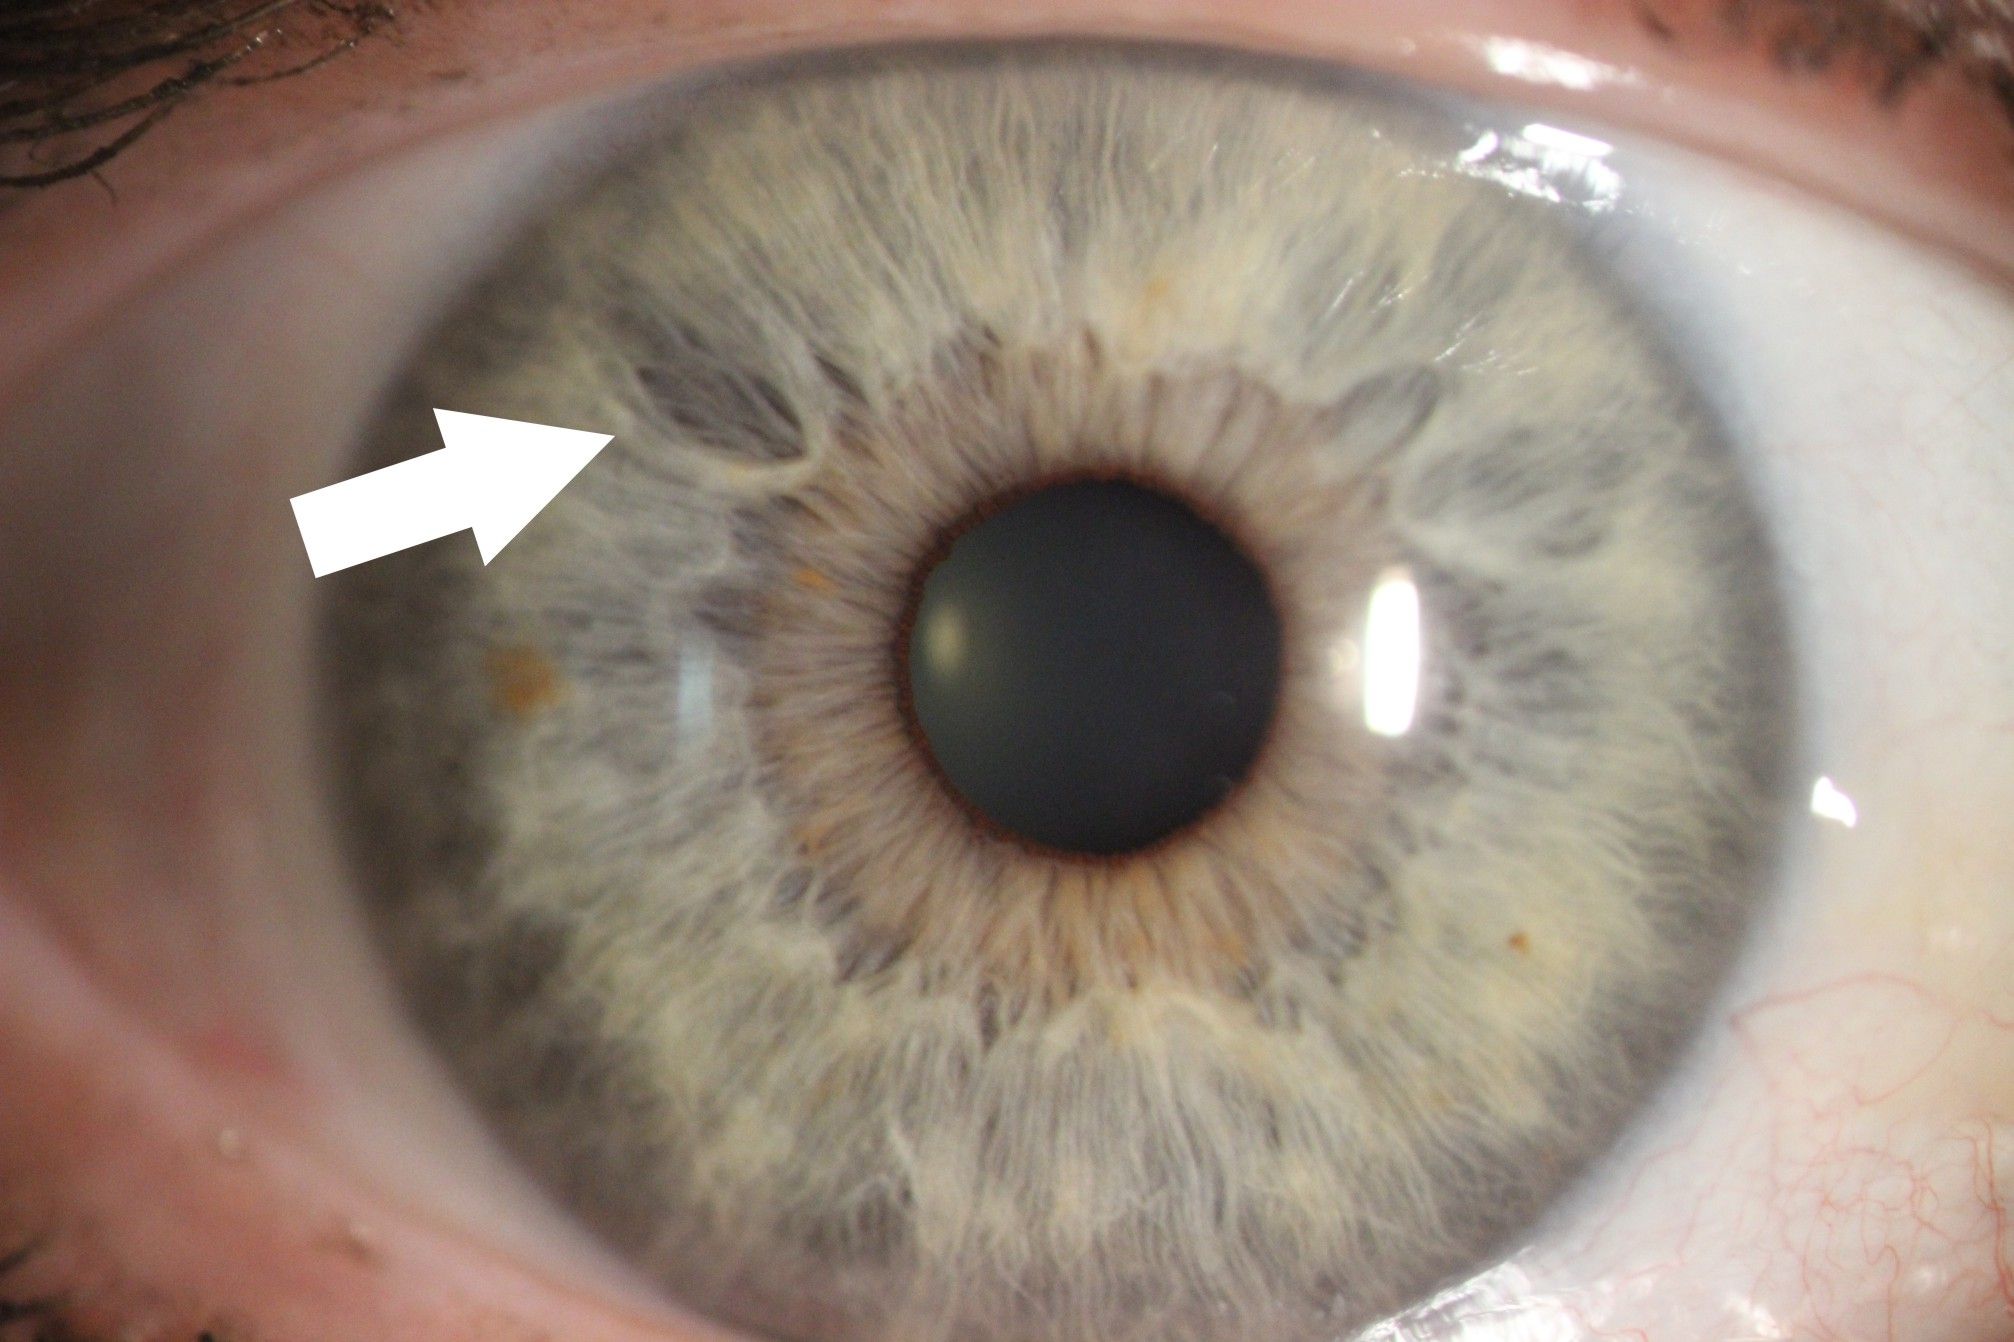 Zdjęcie tęczówki oka z aparatu podczas badania.Jest zaznaczona strzałka pokazująca zmiany na tęczówce. 